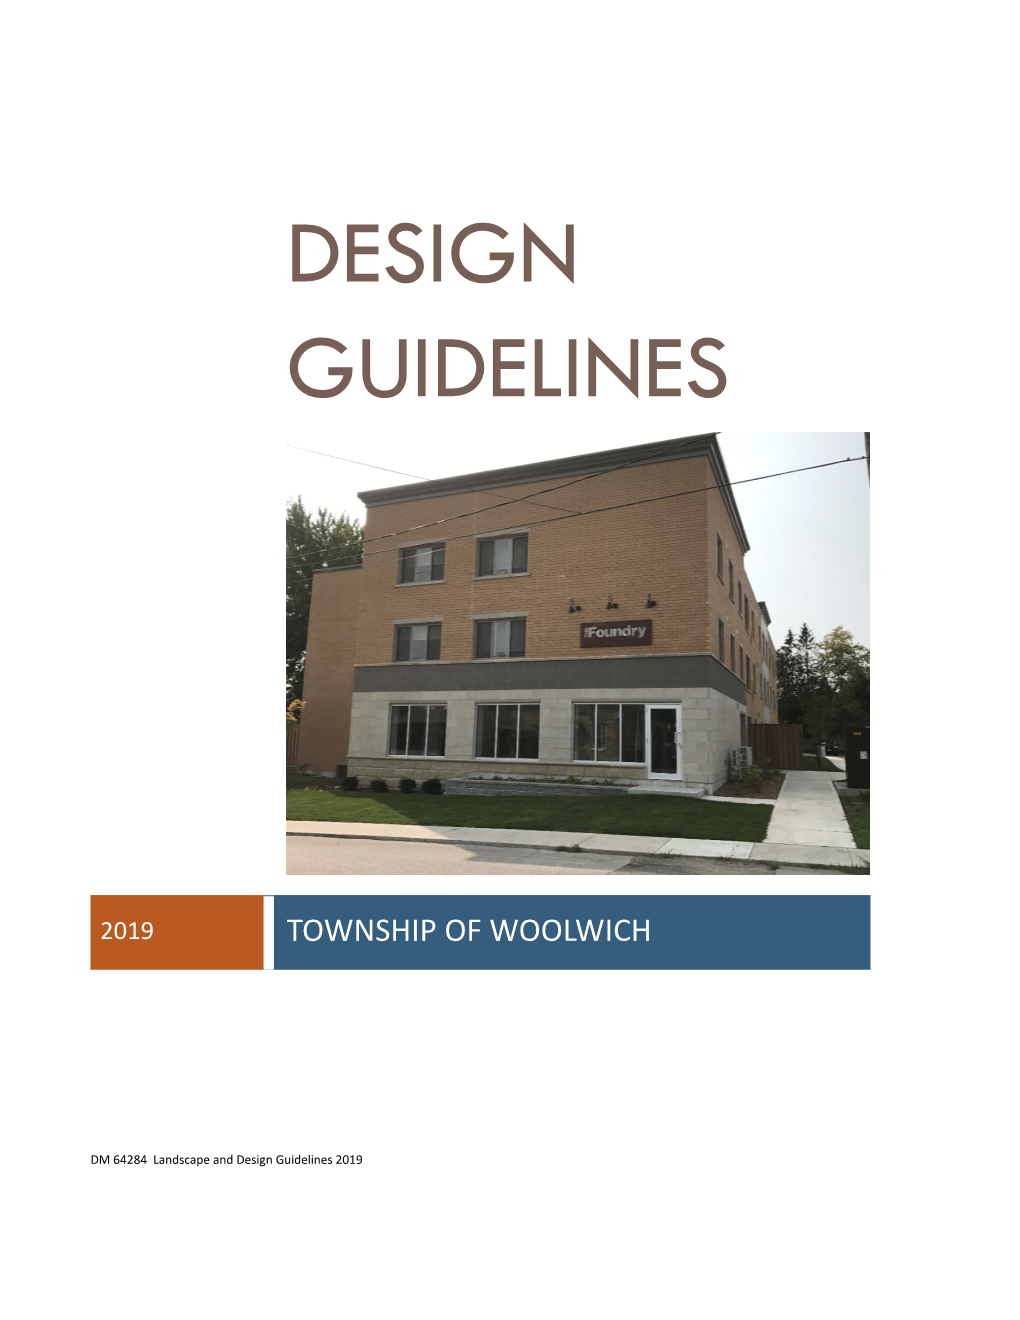 Landscape and Design Guidelines 2019